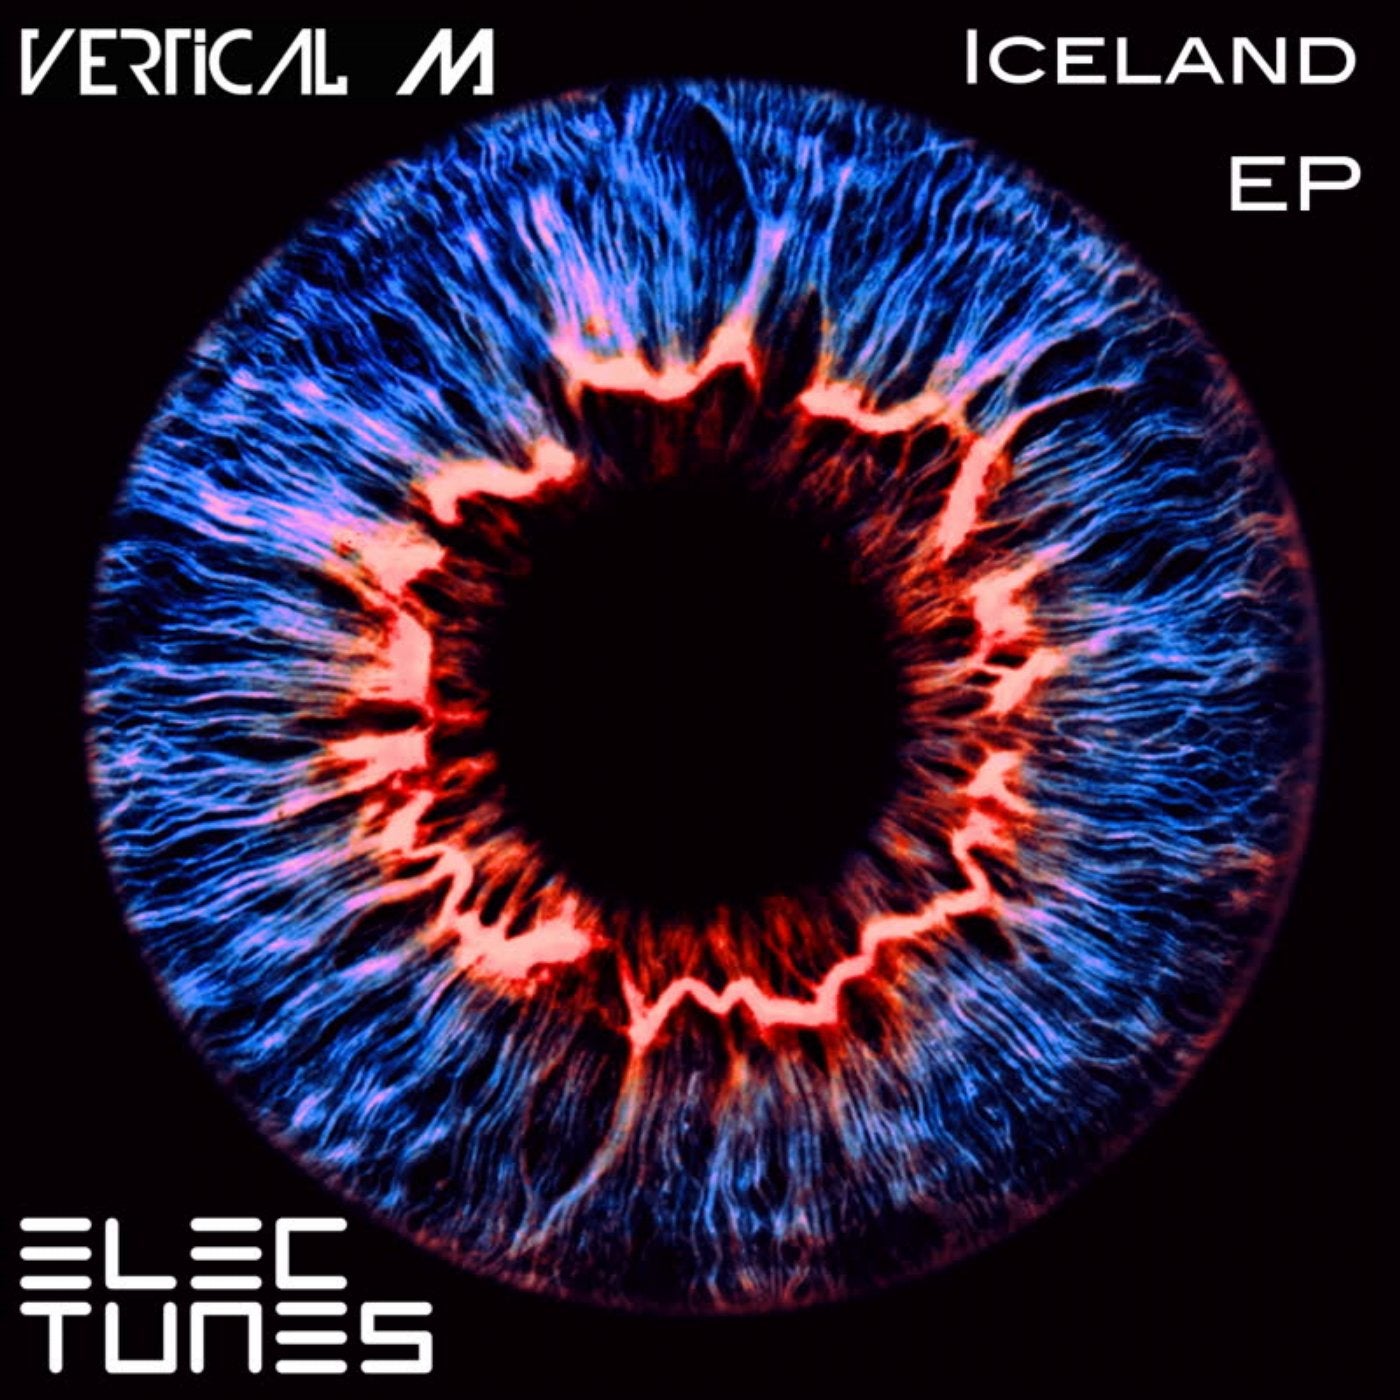 Iceland EP